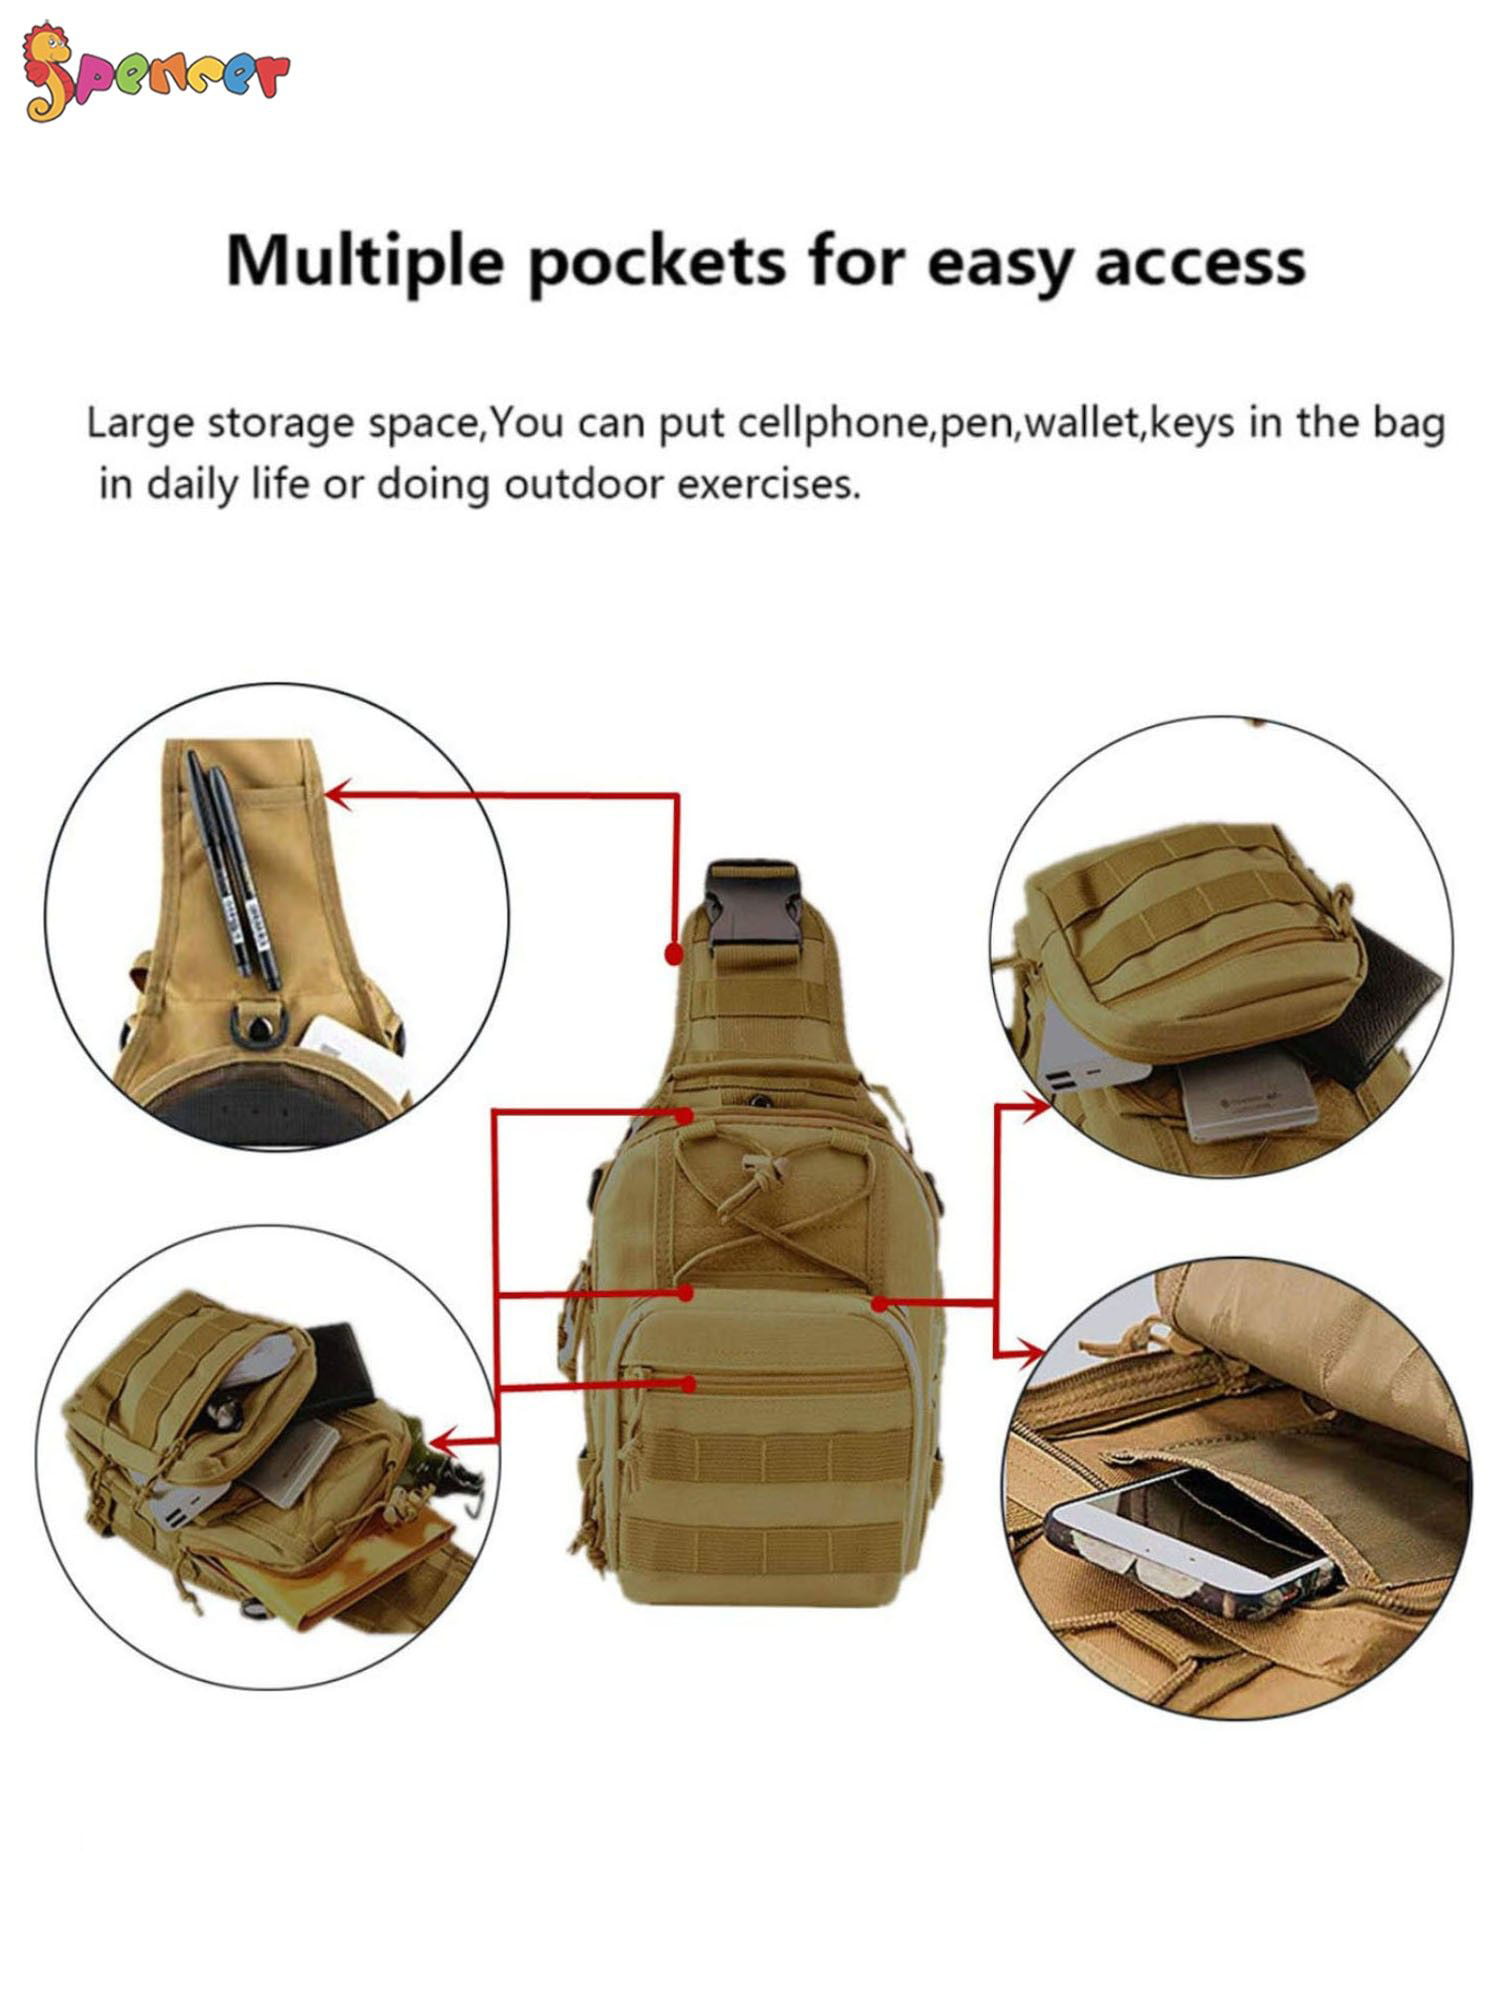  SKYSPER Sling Bag Crossbody Backpack - Chest Shoulder Cross  Body Bag Travel Hiking Casual Daypack for Women Men(Beige) : Sports &  Outdoors